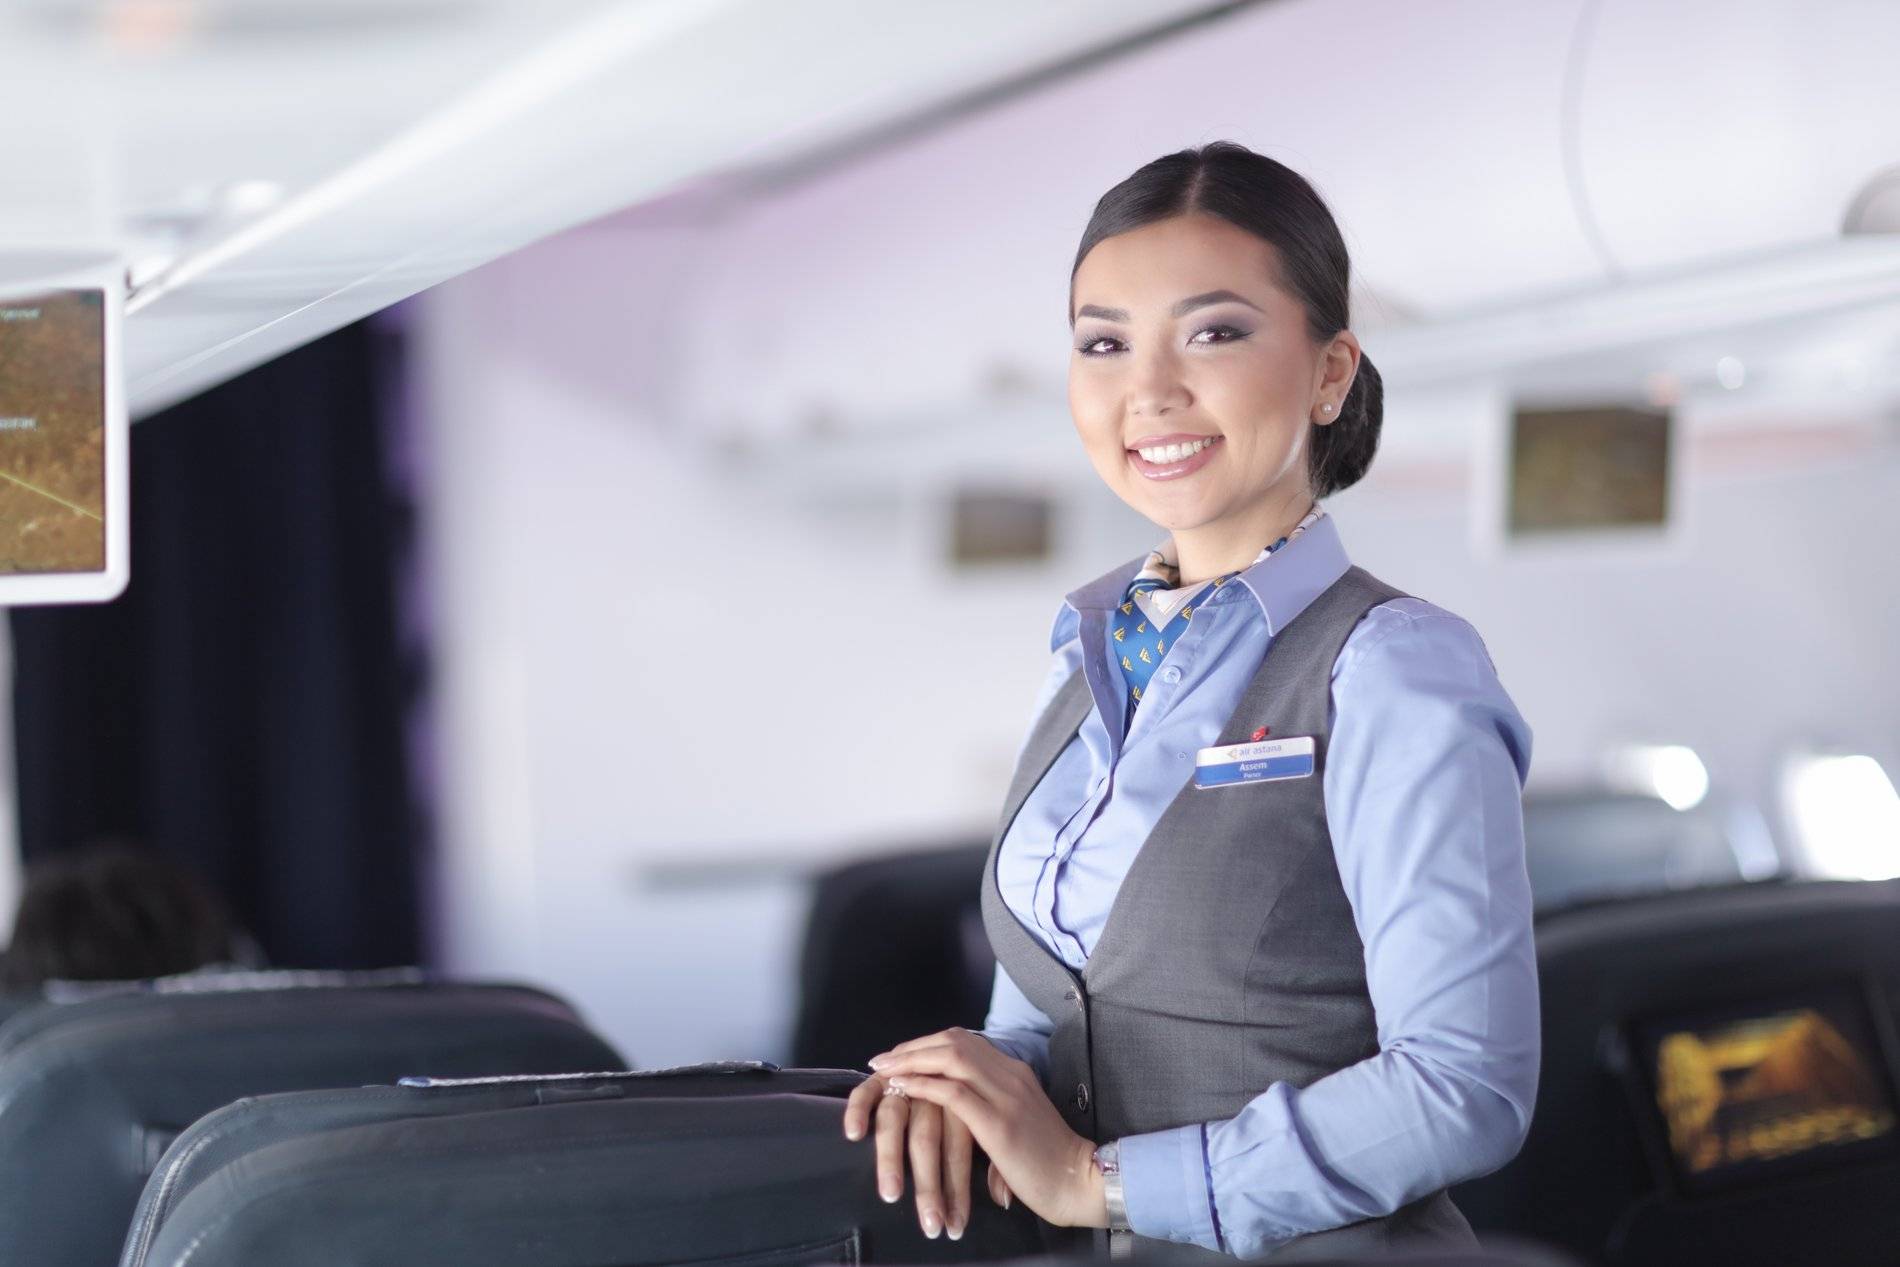 Авиакомпания air astana: тарифы, услуги, багаж